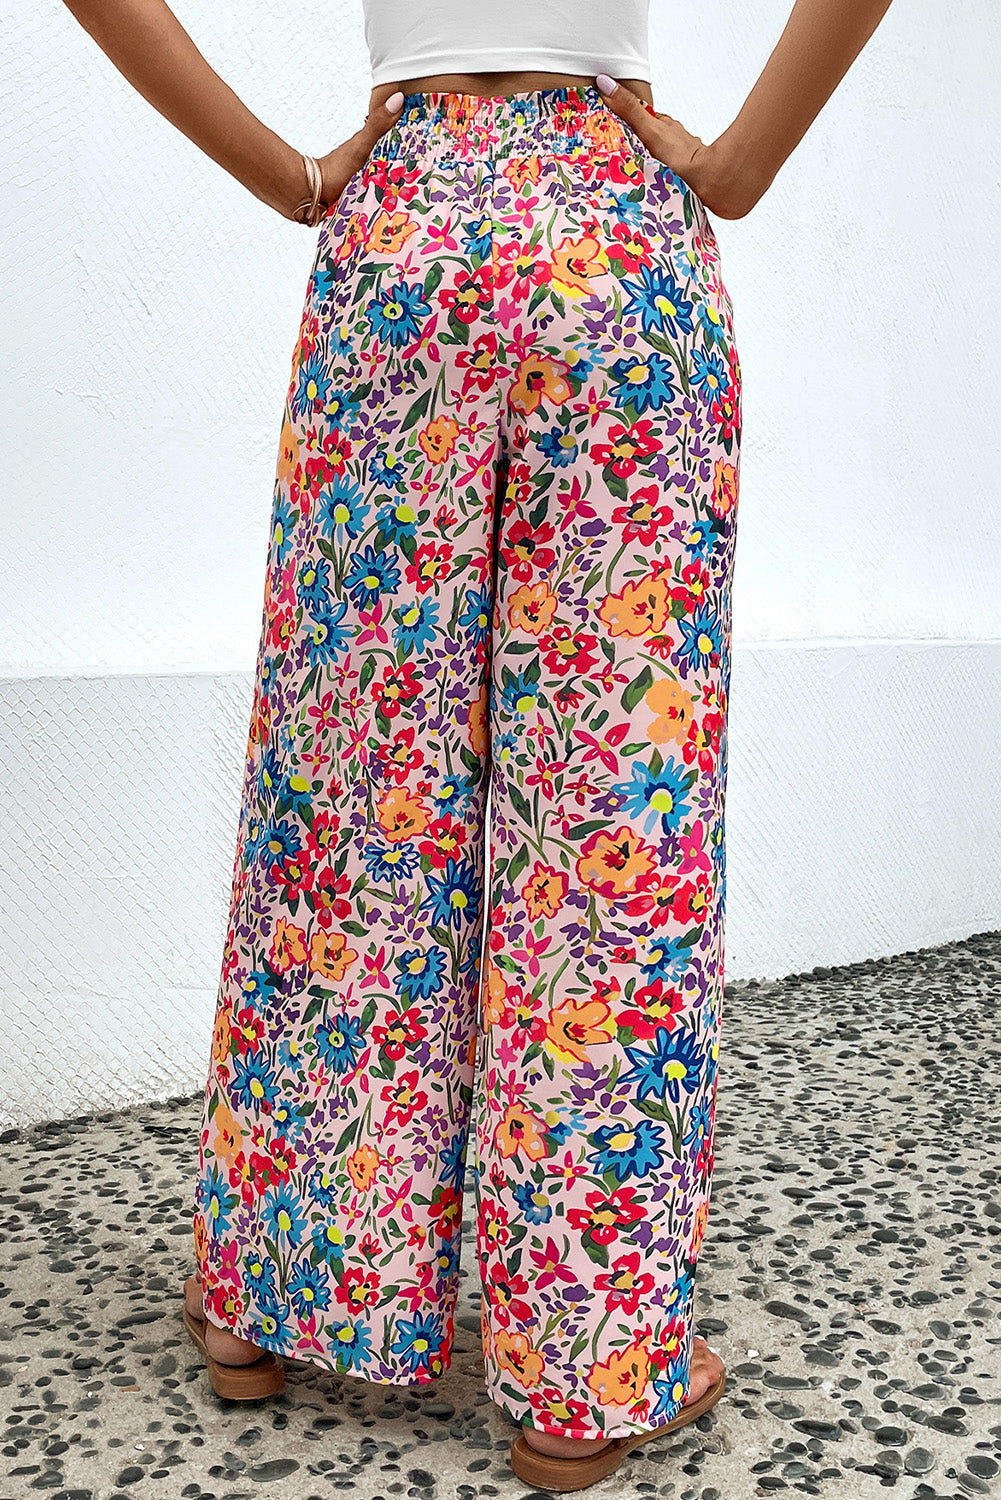 Women’s Floral Print Wide Leg Long Pants